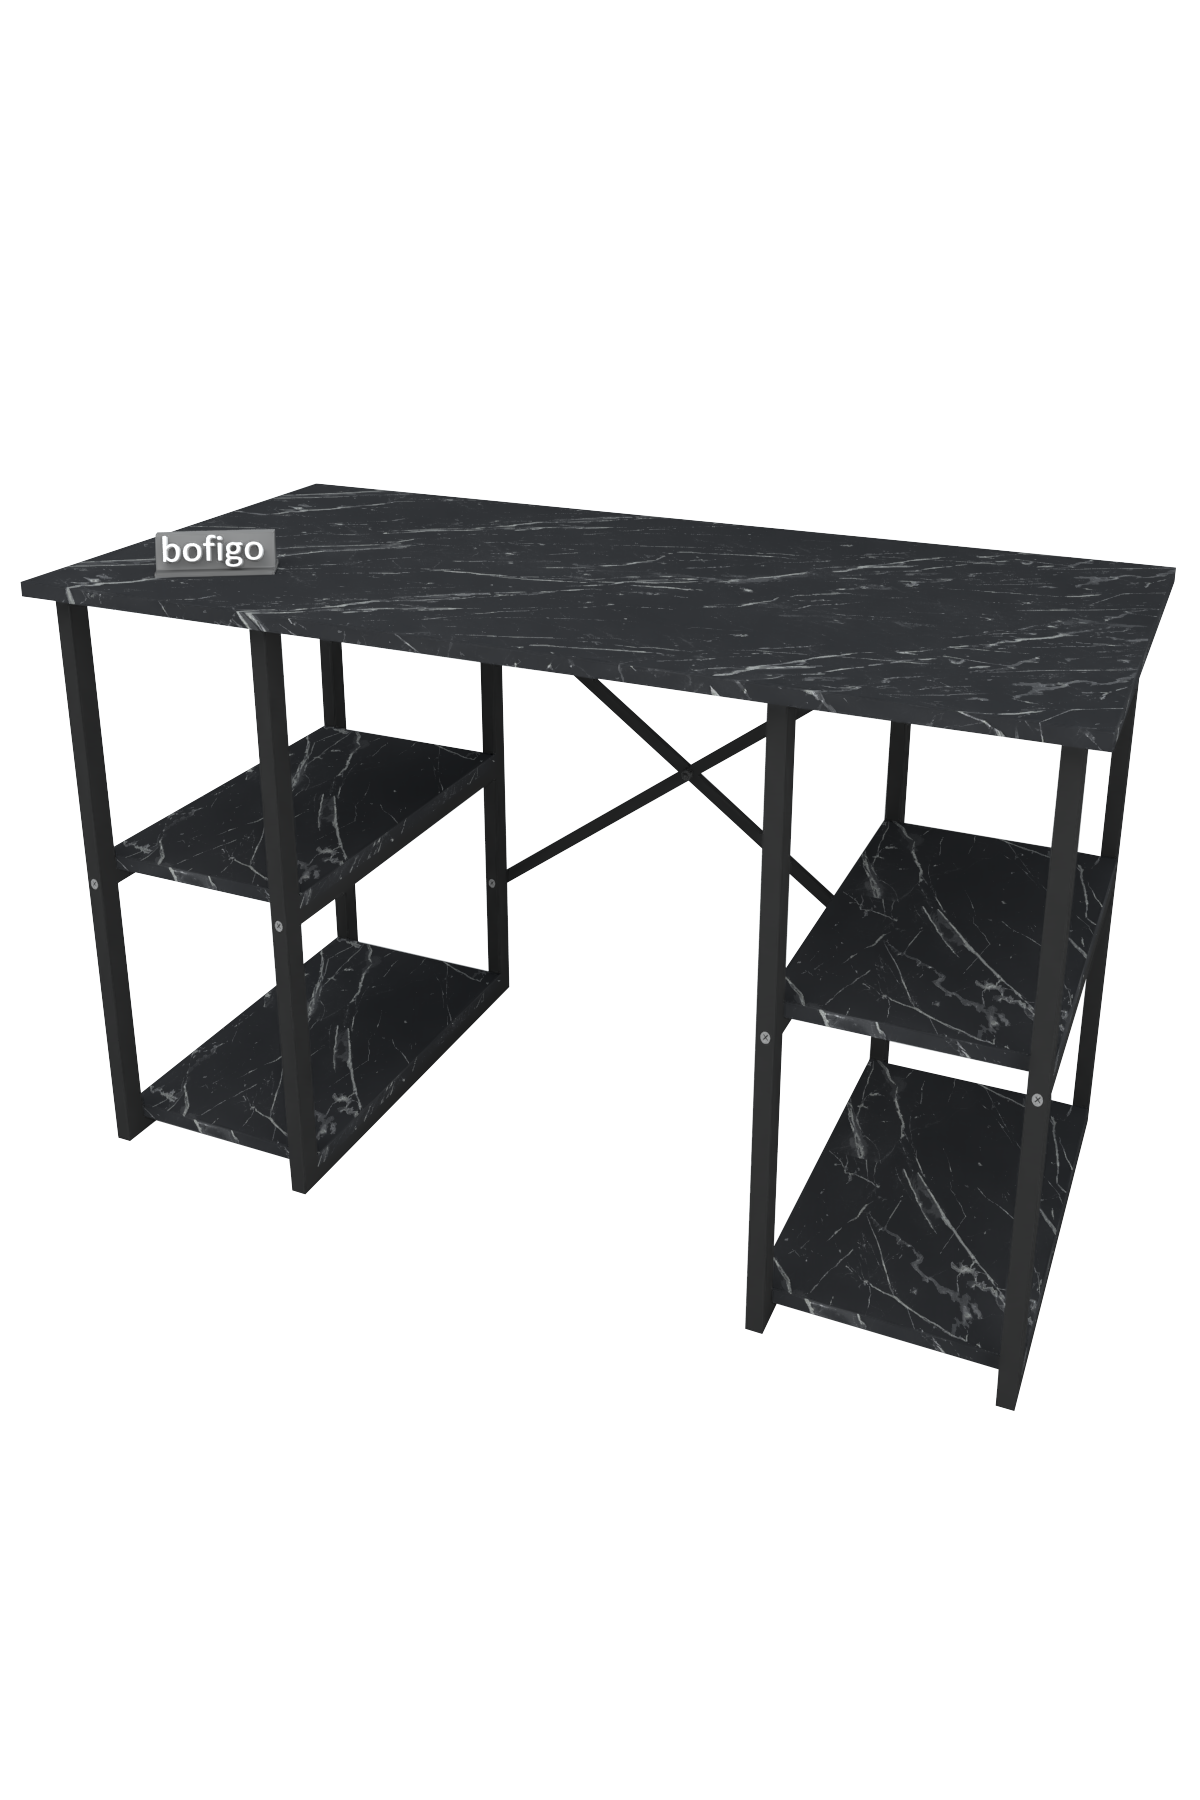 Bofigo 4 Shelf Study Desk 60x120 cm  Bendir